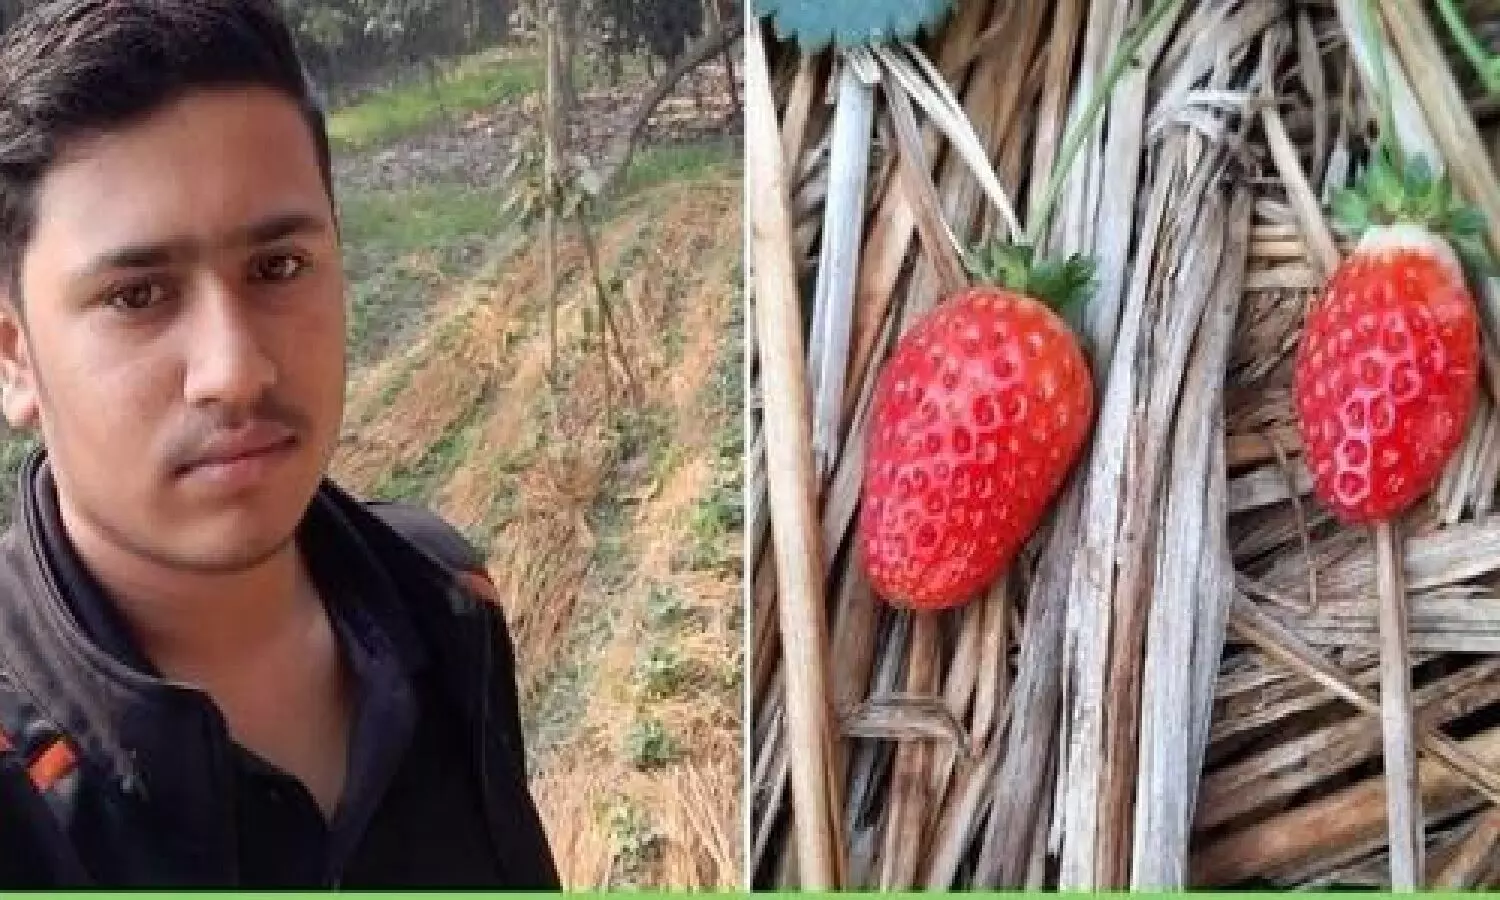 स्ट्रॉबेरी की खेती कैसे होती है: 10वीं के स्टूडेंट ने छोटा सा प्रयोग किया था, आज Strawberry Farming कर लाखों कमा रहा